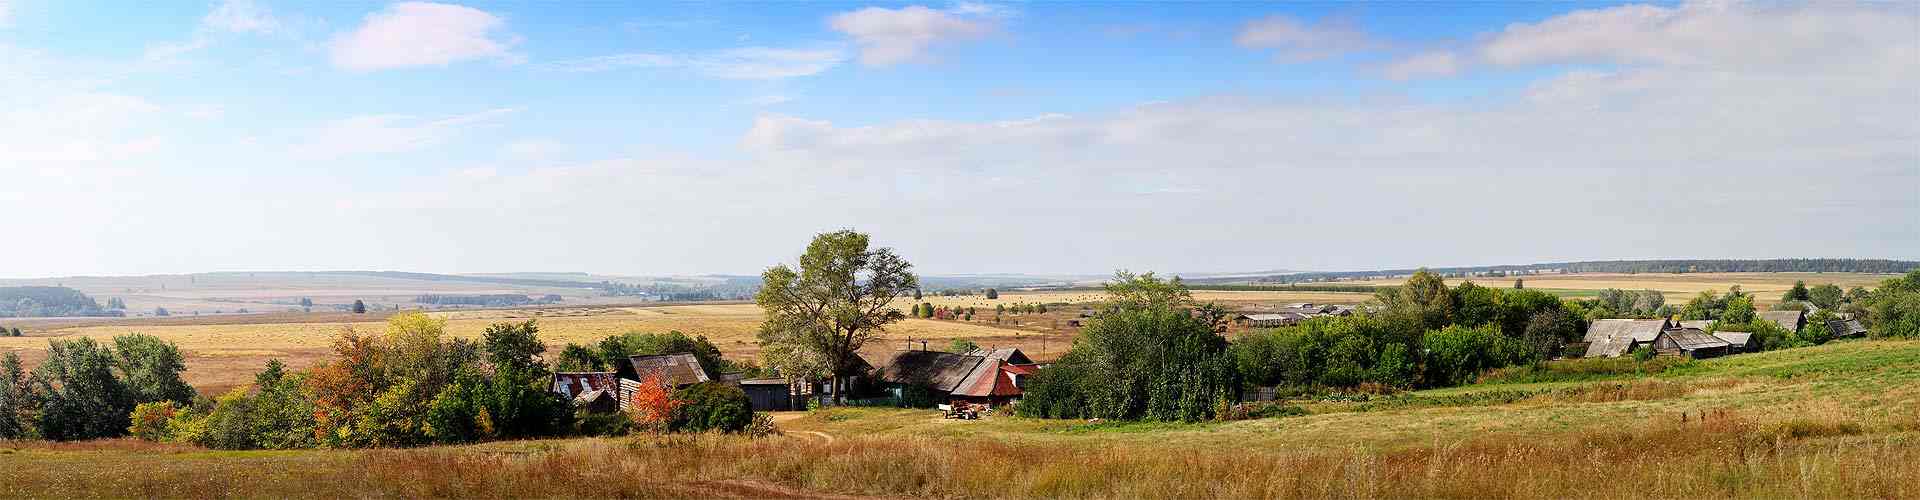 Casas rurales en Cabezo de la Plata
           
           


          
          
          
